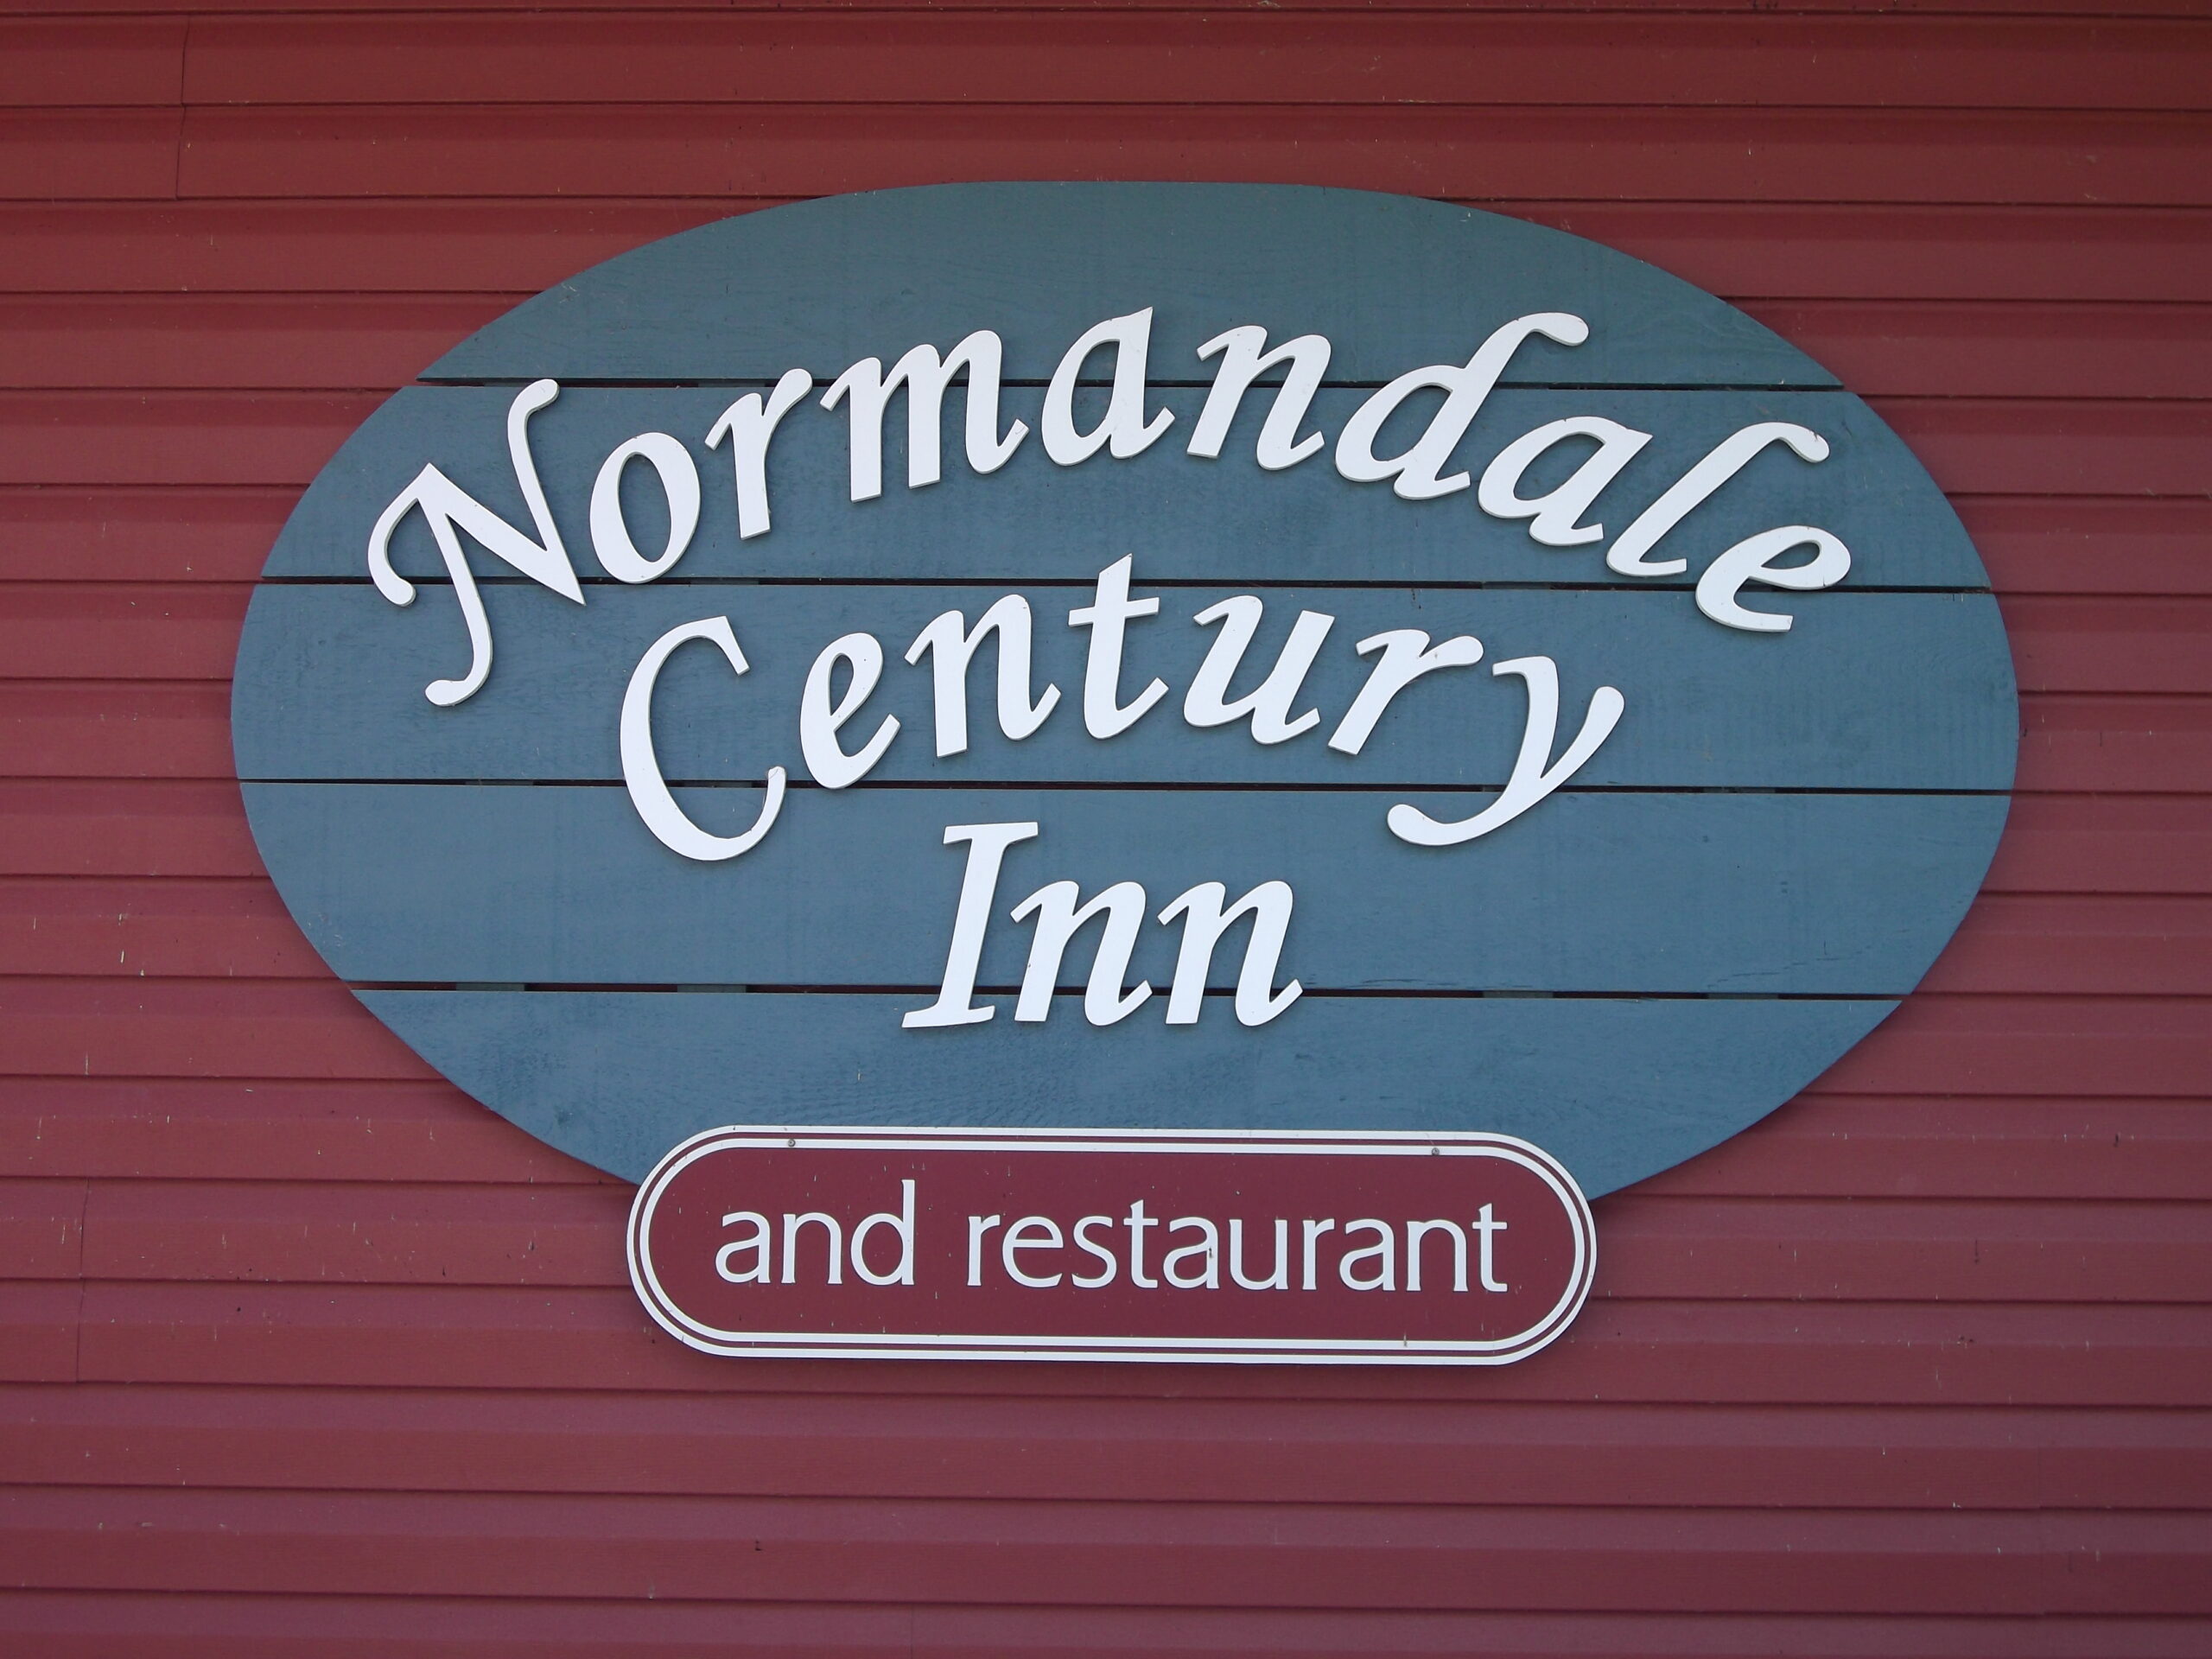 Normandale Century Inn